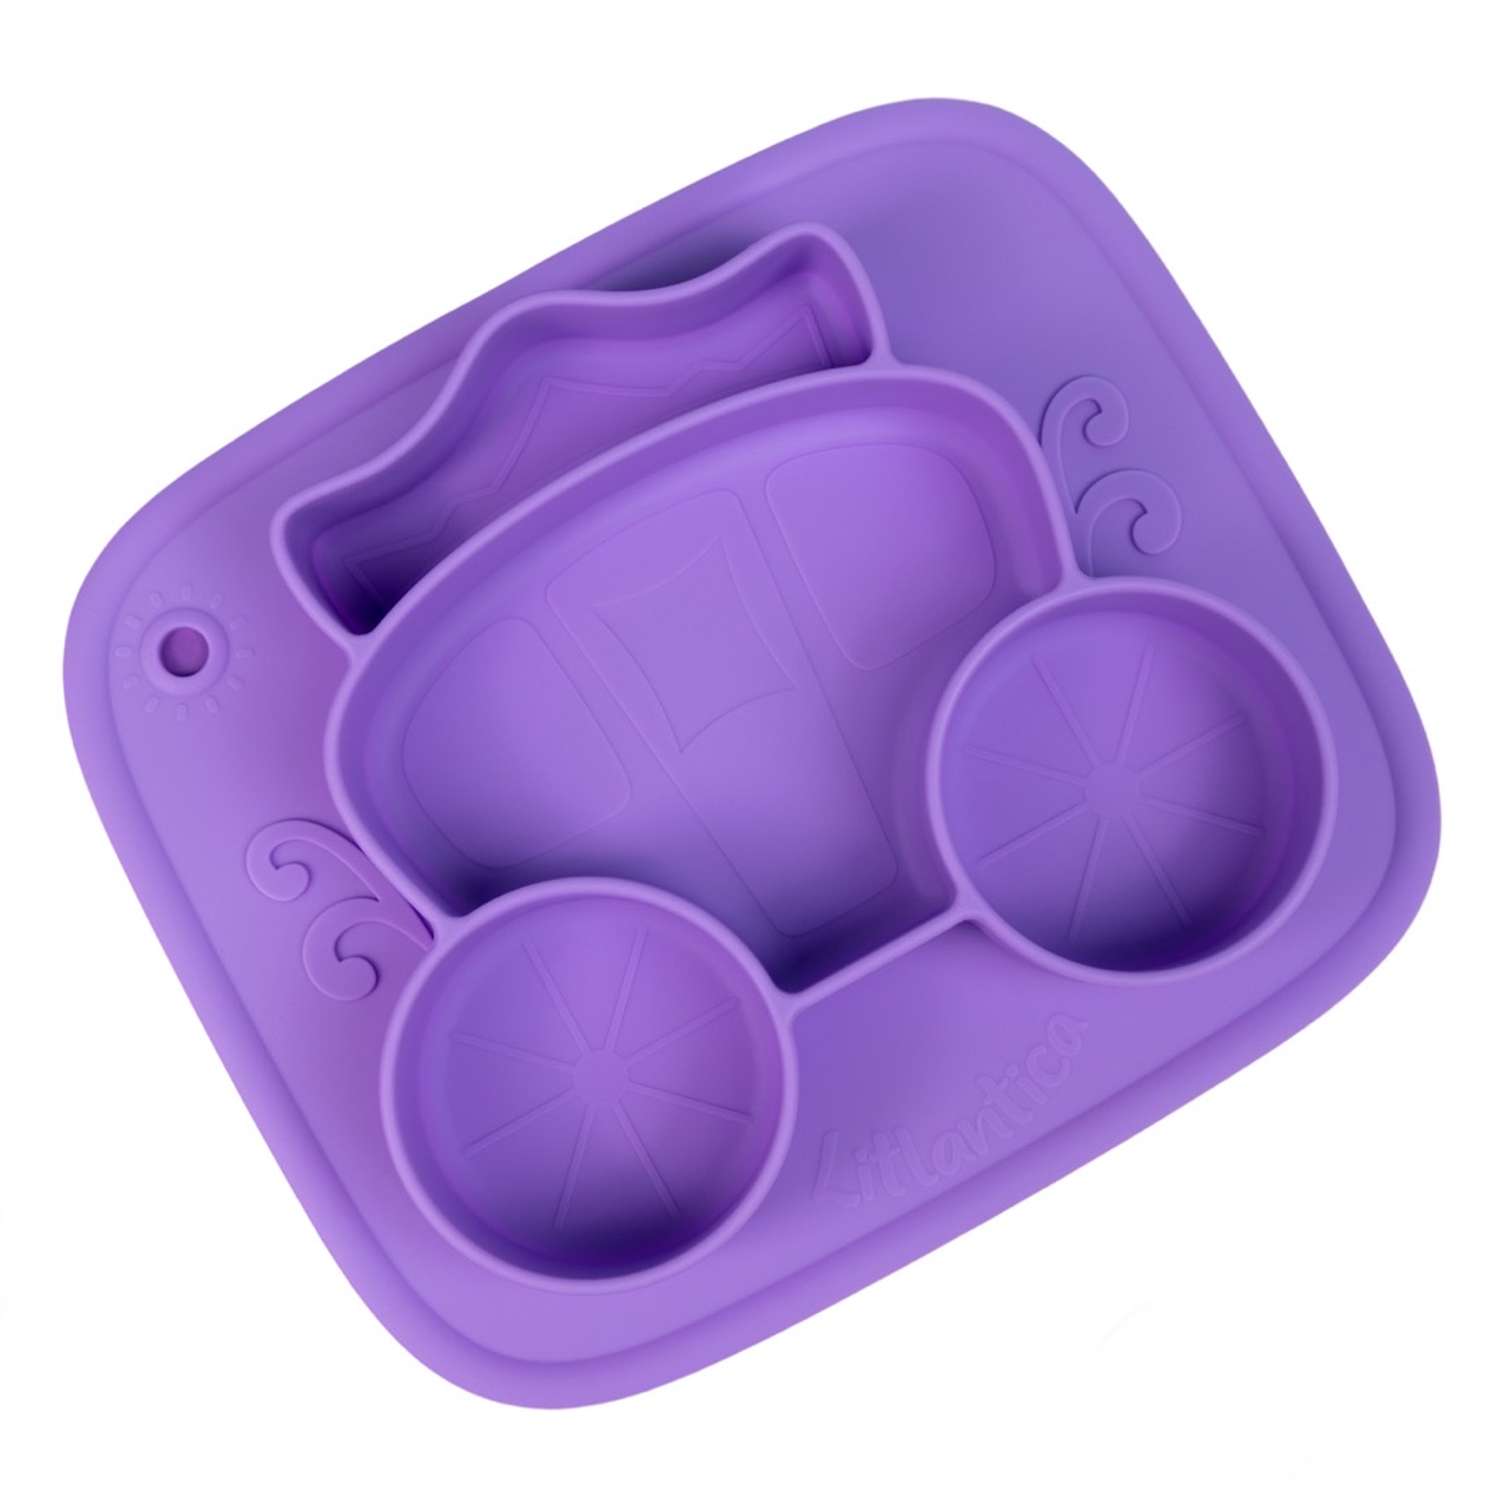 Cиликоновая тарелка присоска Litlantica карета фиолетовая - фото 1